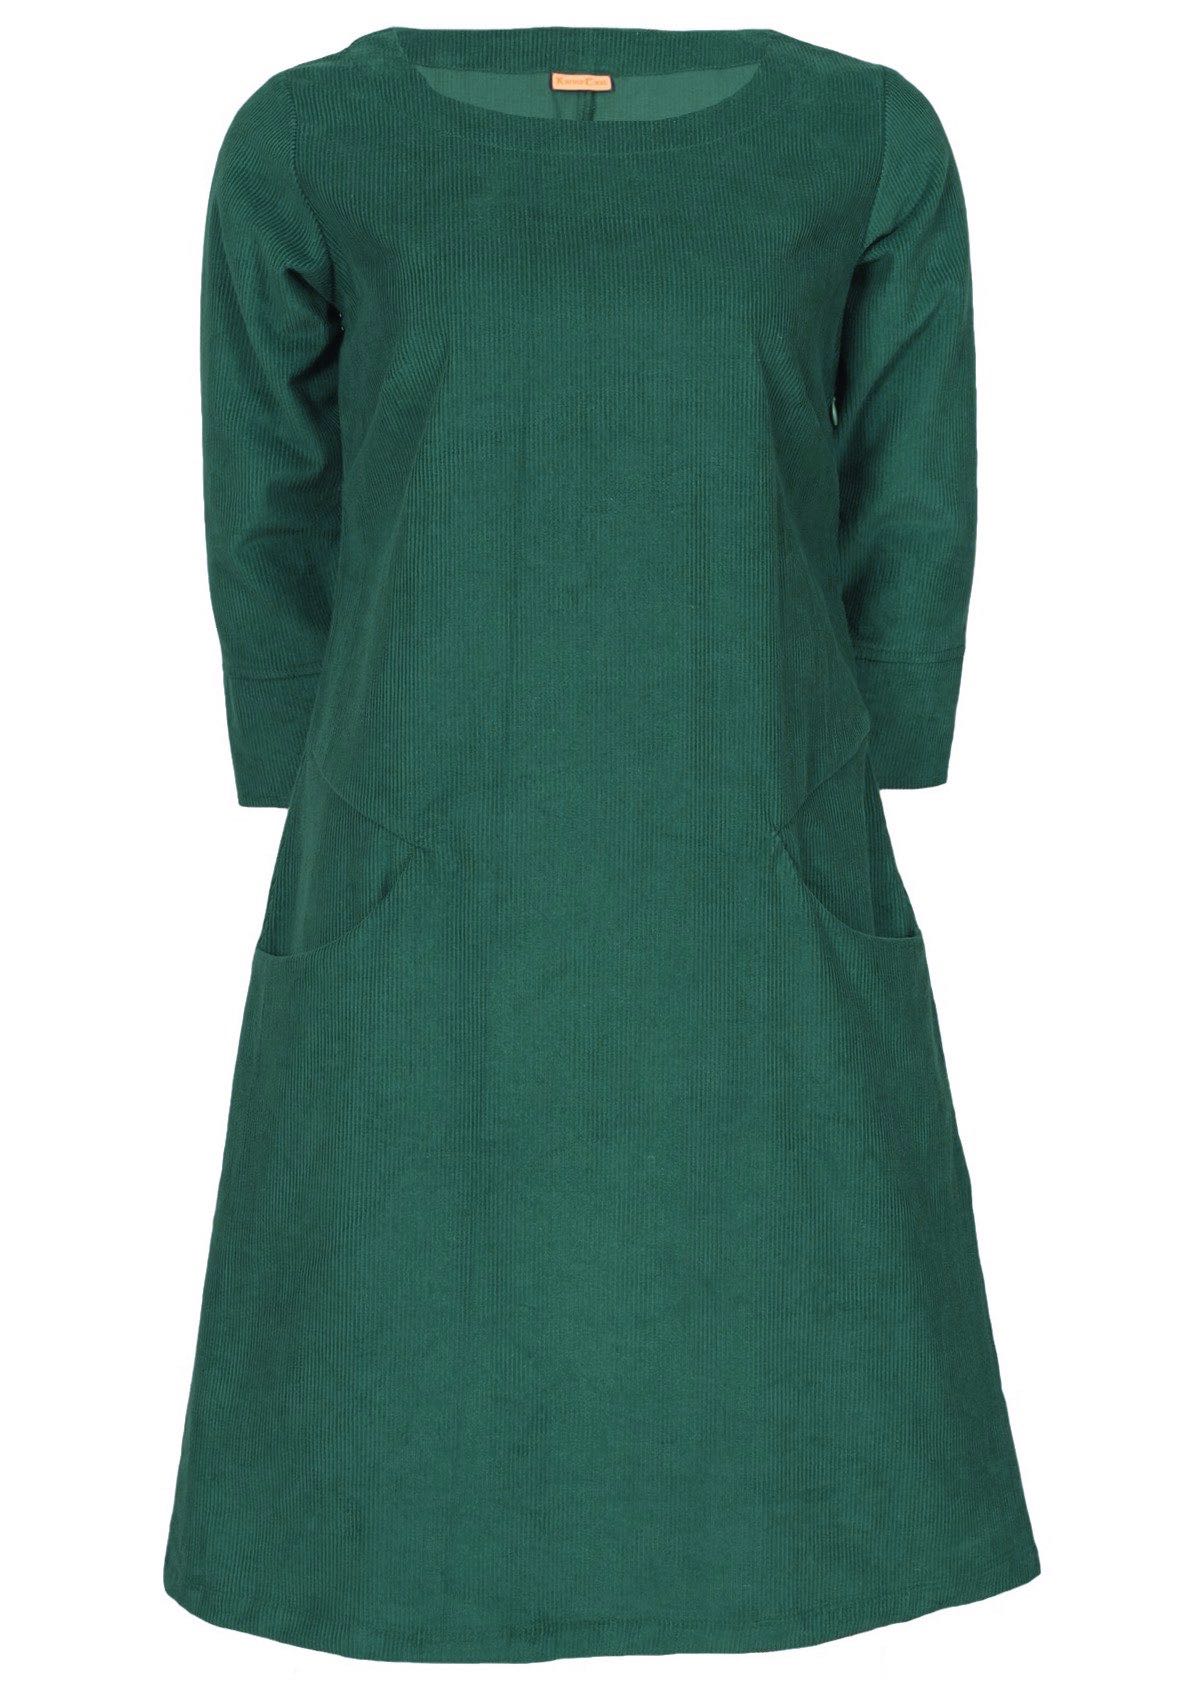 Green 100% cotton corduroy dress has a round neckline. 